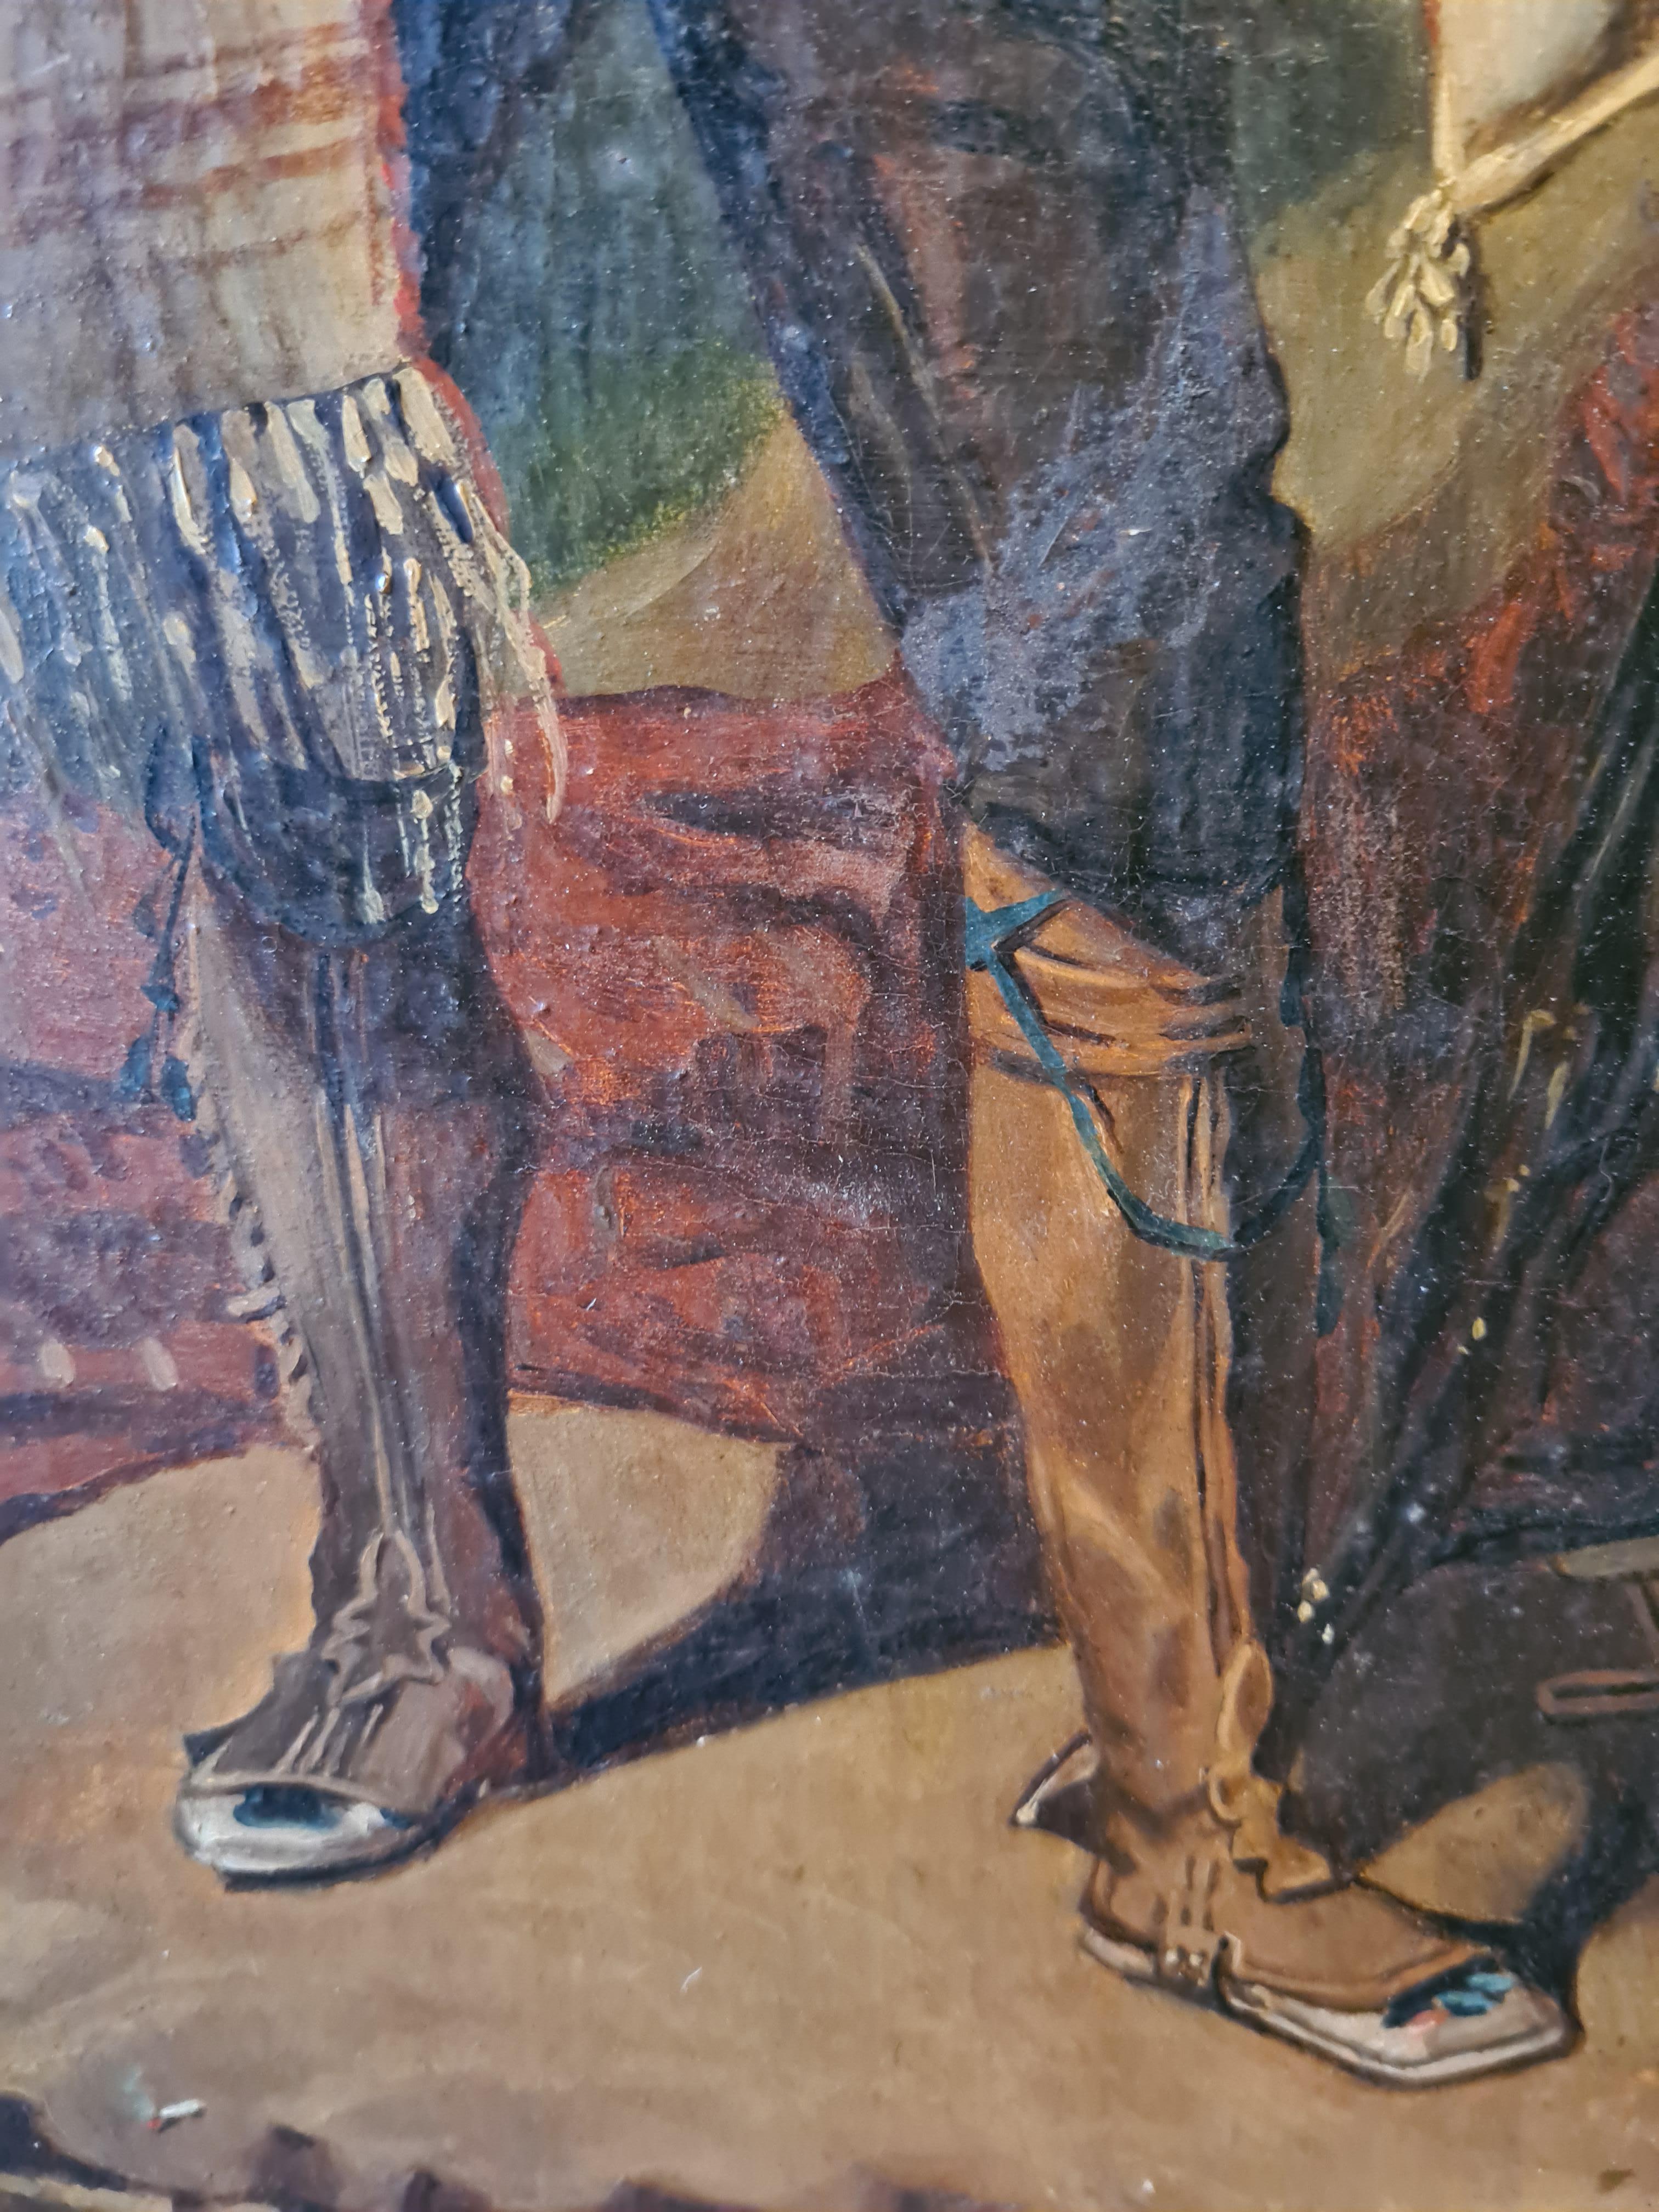 Huile sur toile du milieu du XIXe siècle représentant un brigand italien, non signée, dans un cadre en bois peint et doré.

La peinture est un rendu fin et fascinant avec beaucoup de caractère et de détails merveilleux dans le costume, les